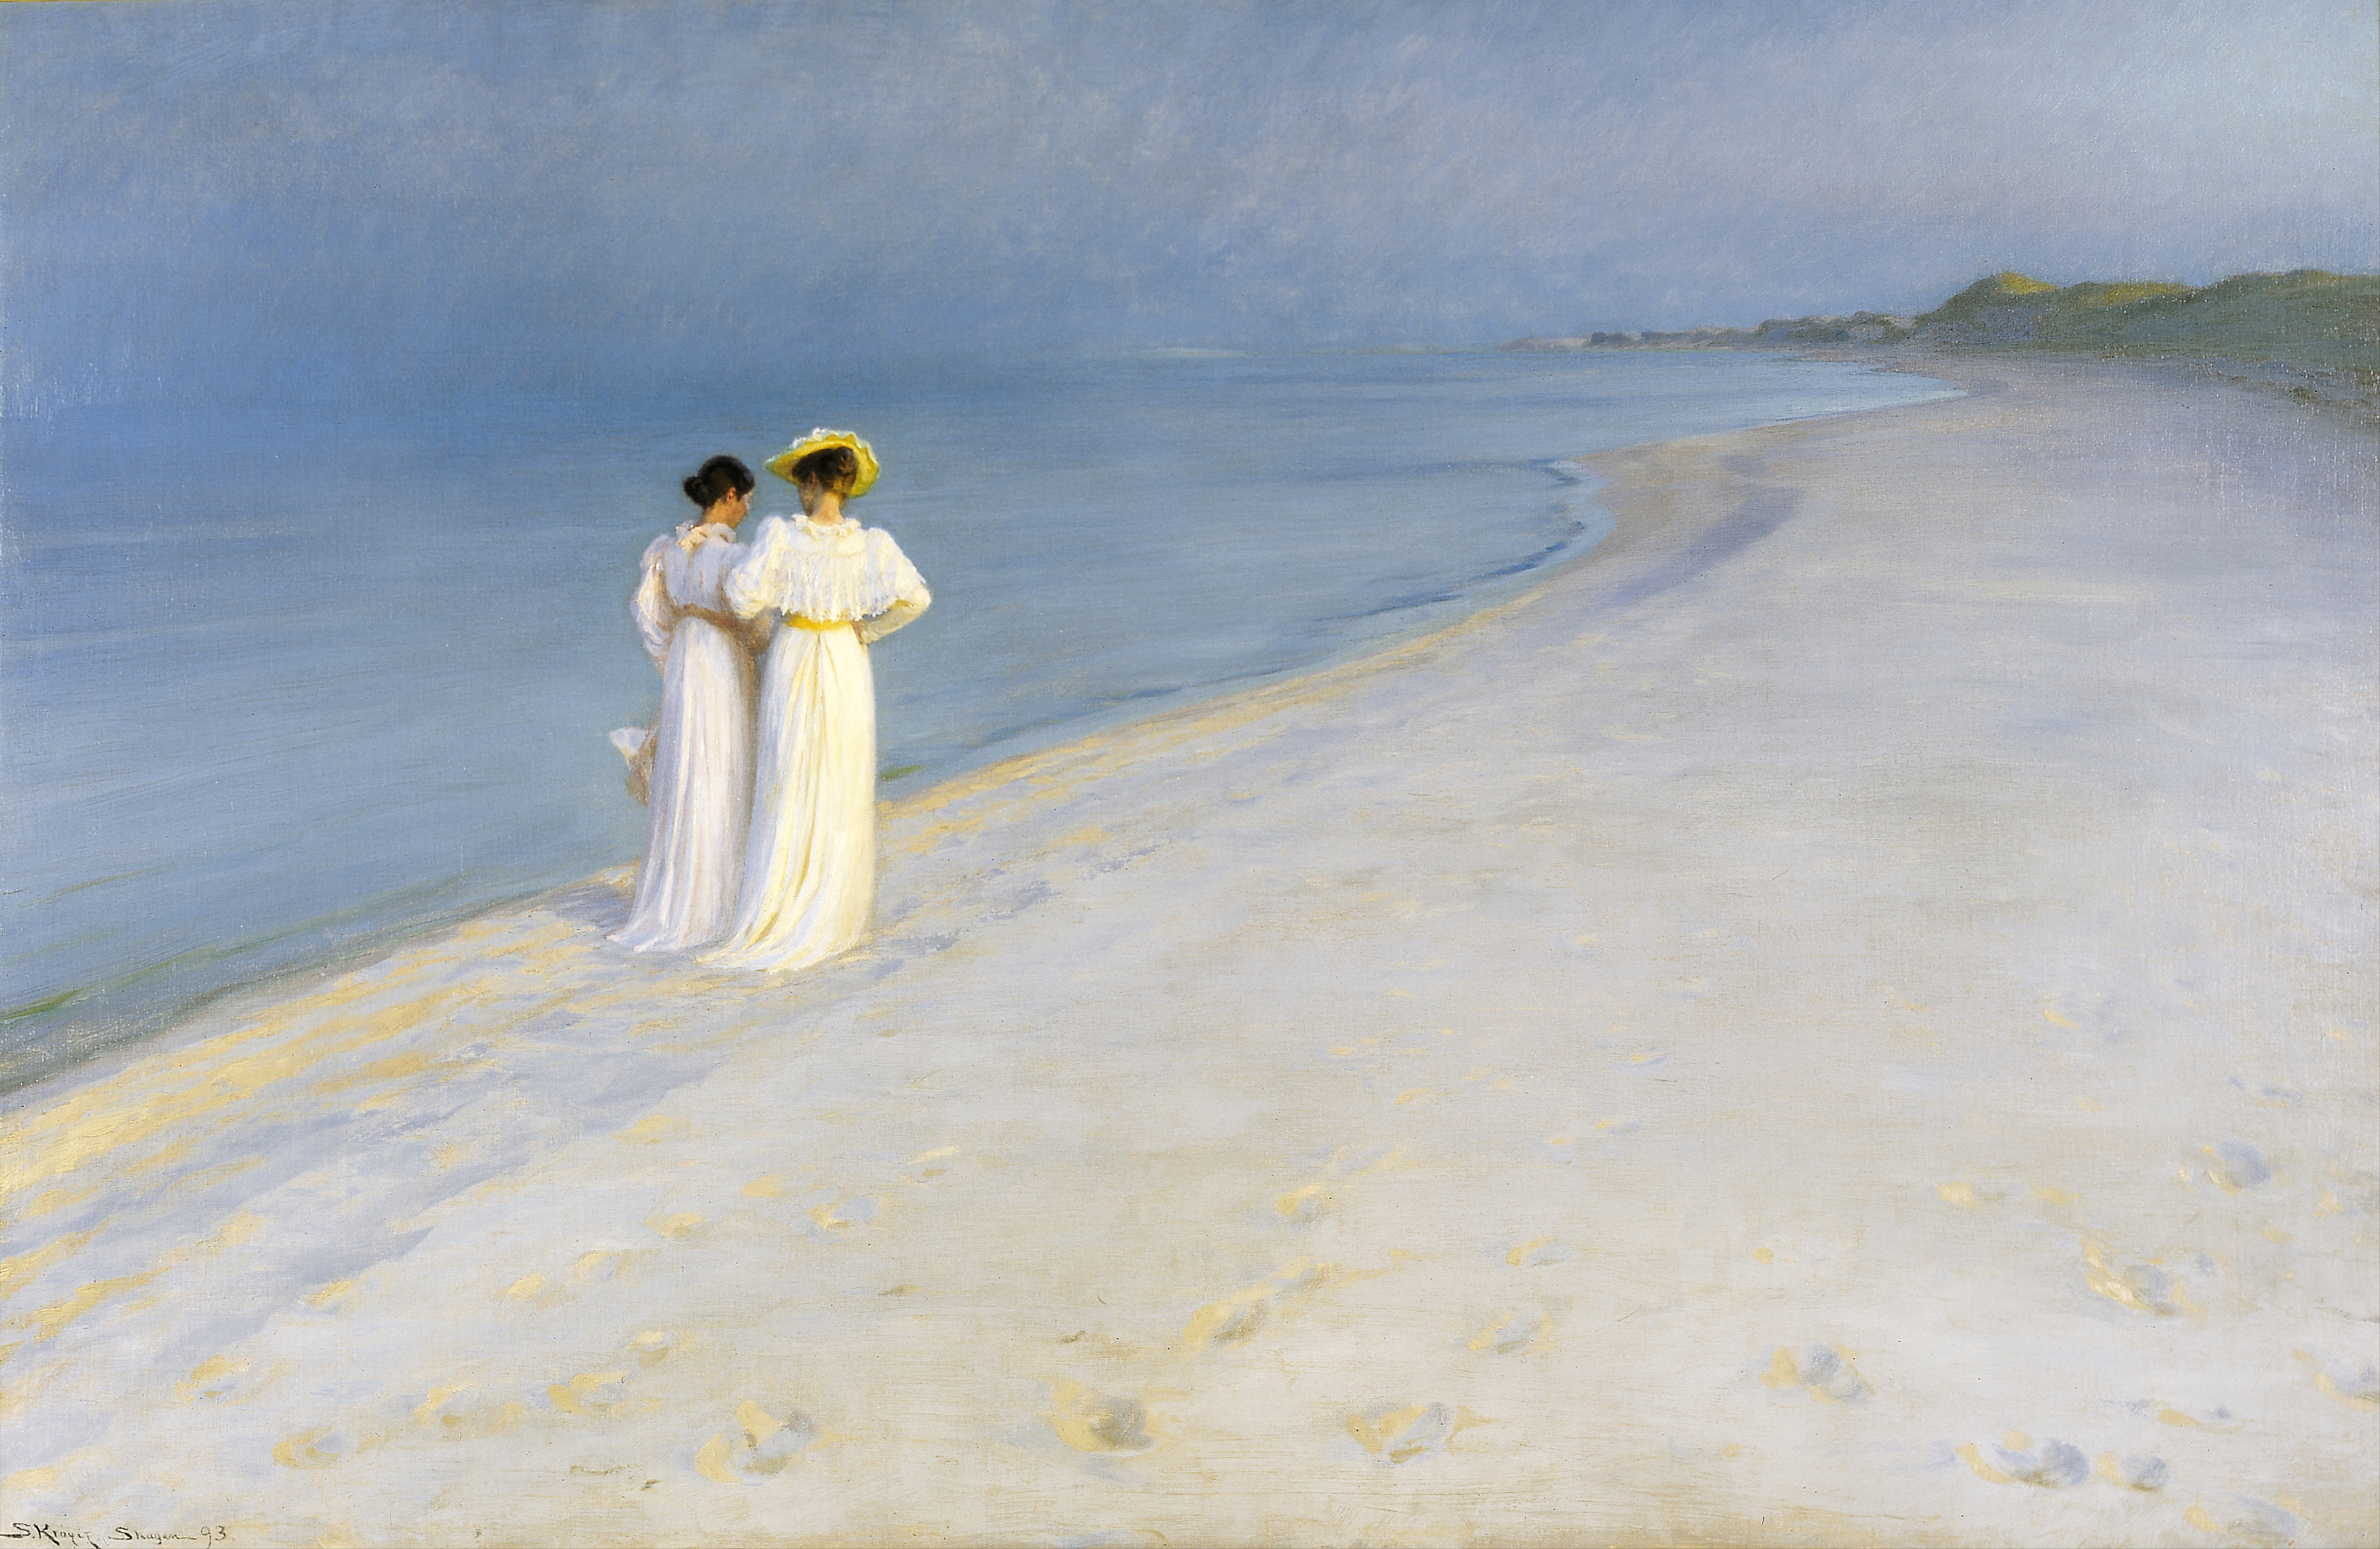 Καλοκαιρινό απόγευμα στη νότια παραλία του Σκάγκεν, η Άννα Άνκερ και η Μαρί Κρέιερ περπατούν μαζί  by P.S. Krøyer - 1893 - 100 x 150 εκ.  